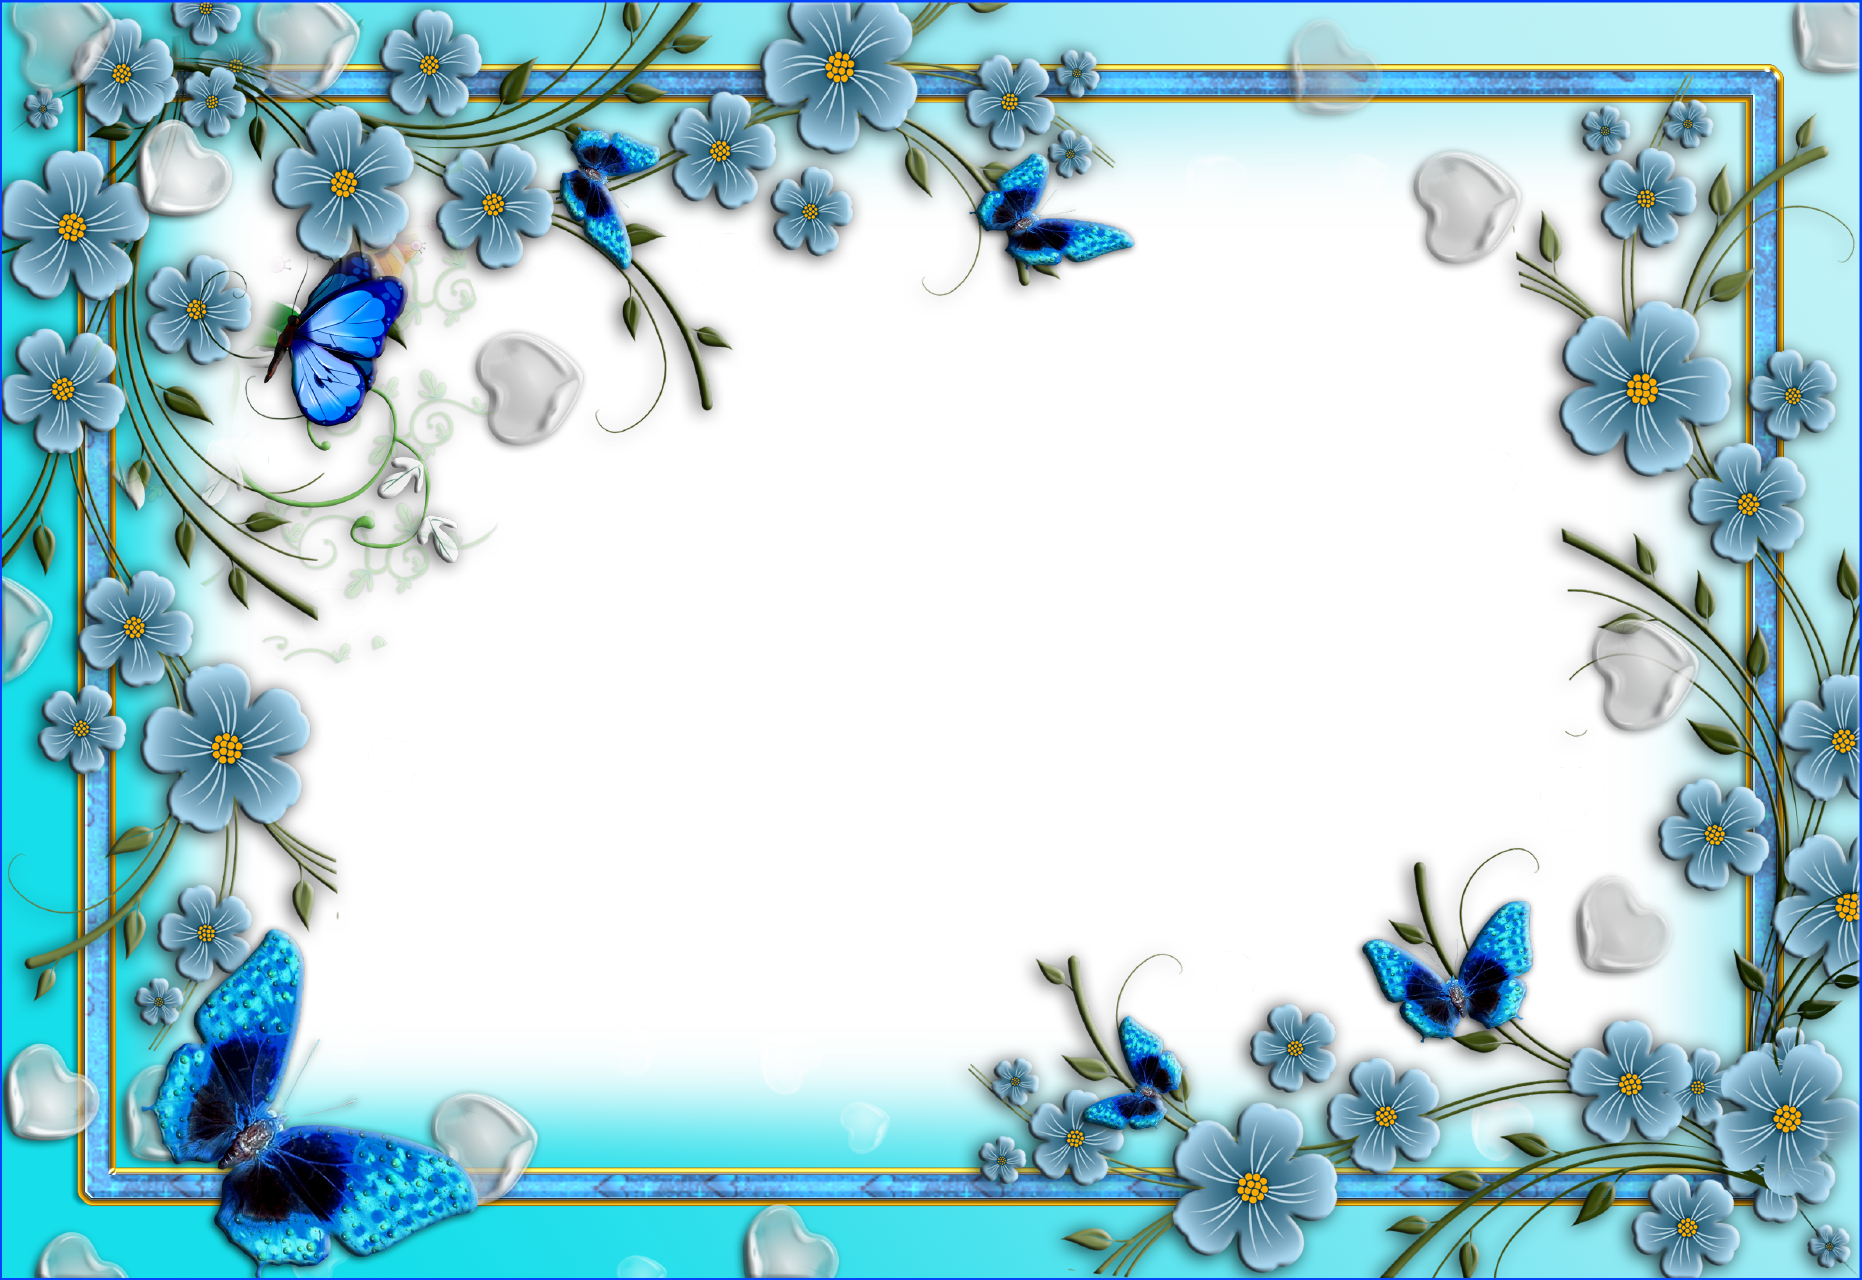 Total 84+ imagem blue floral frame background - Thcshoanghoatham-badinh ...